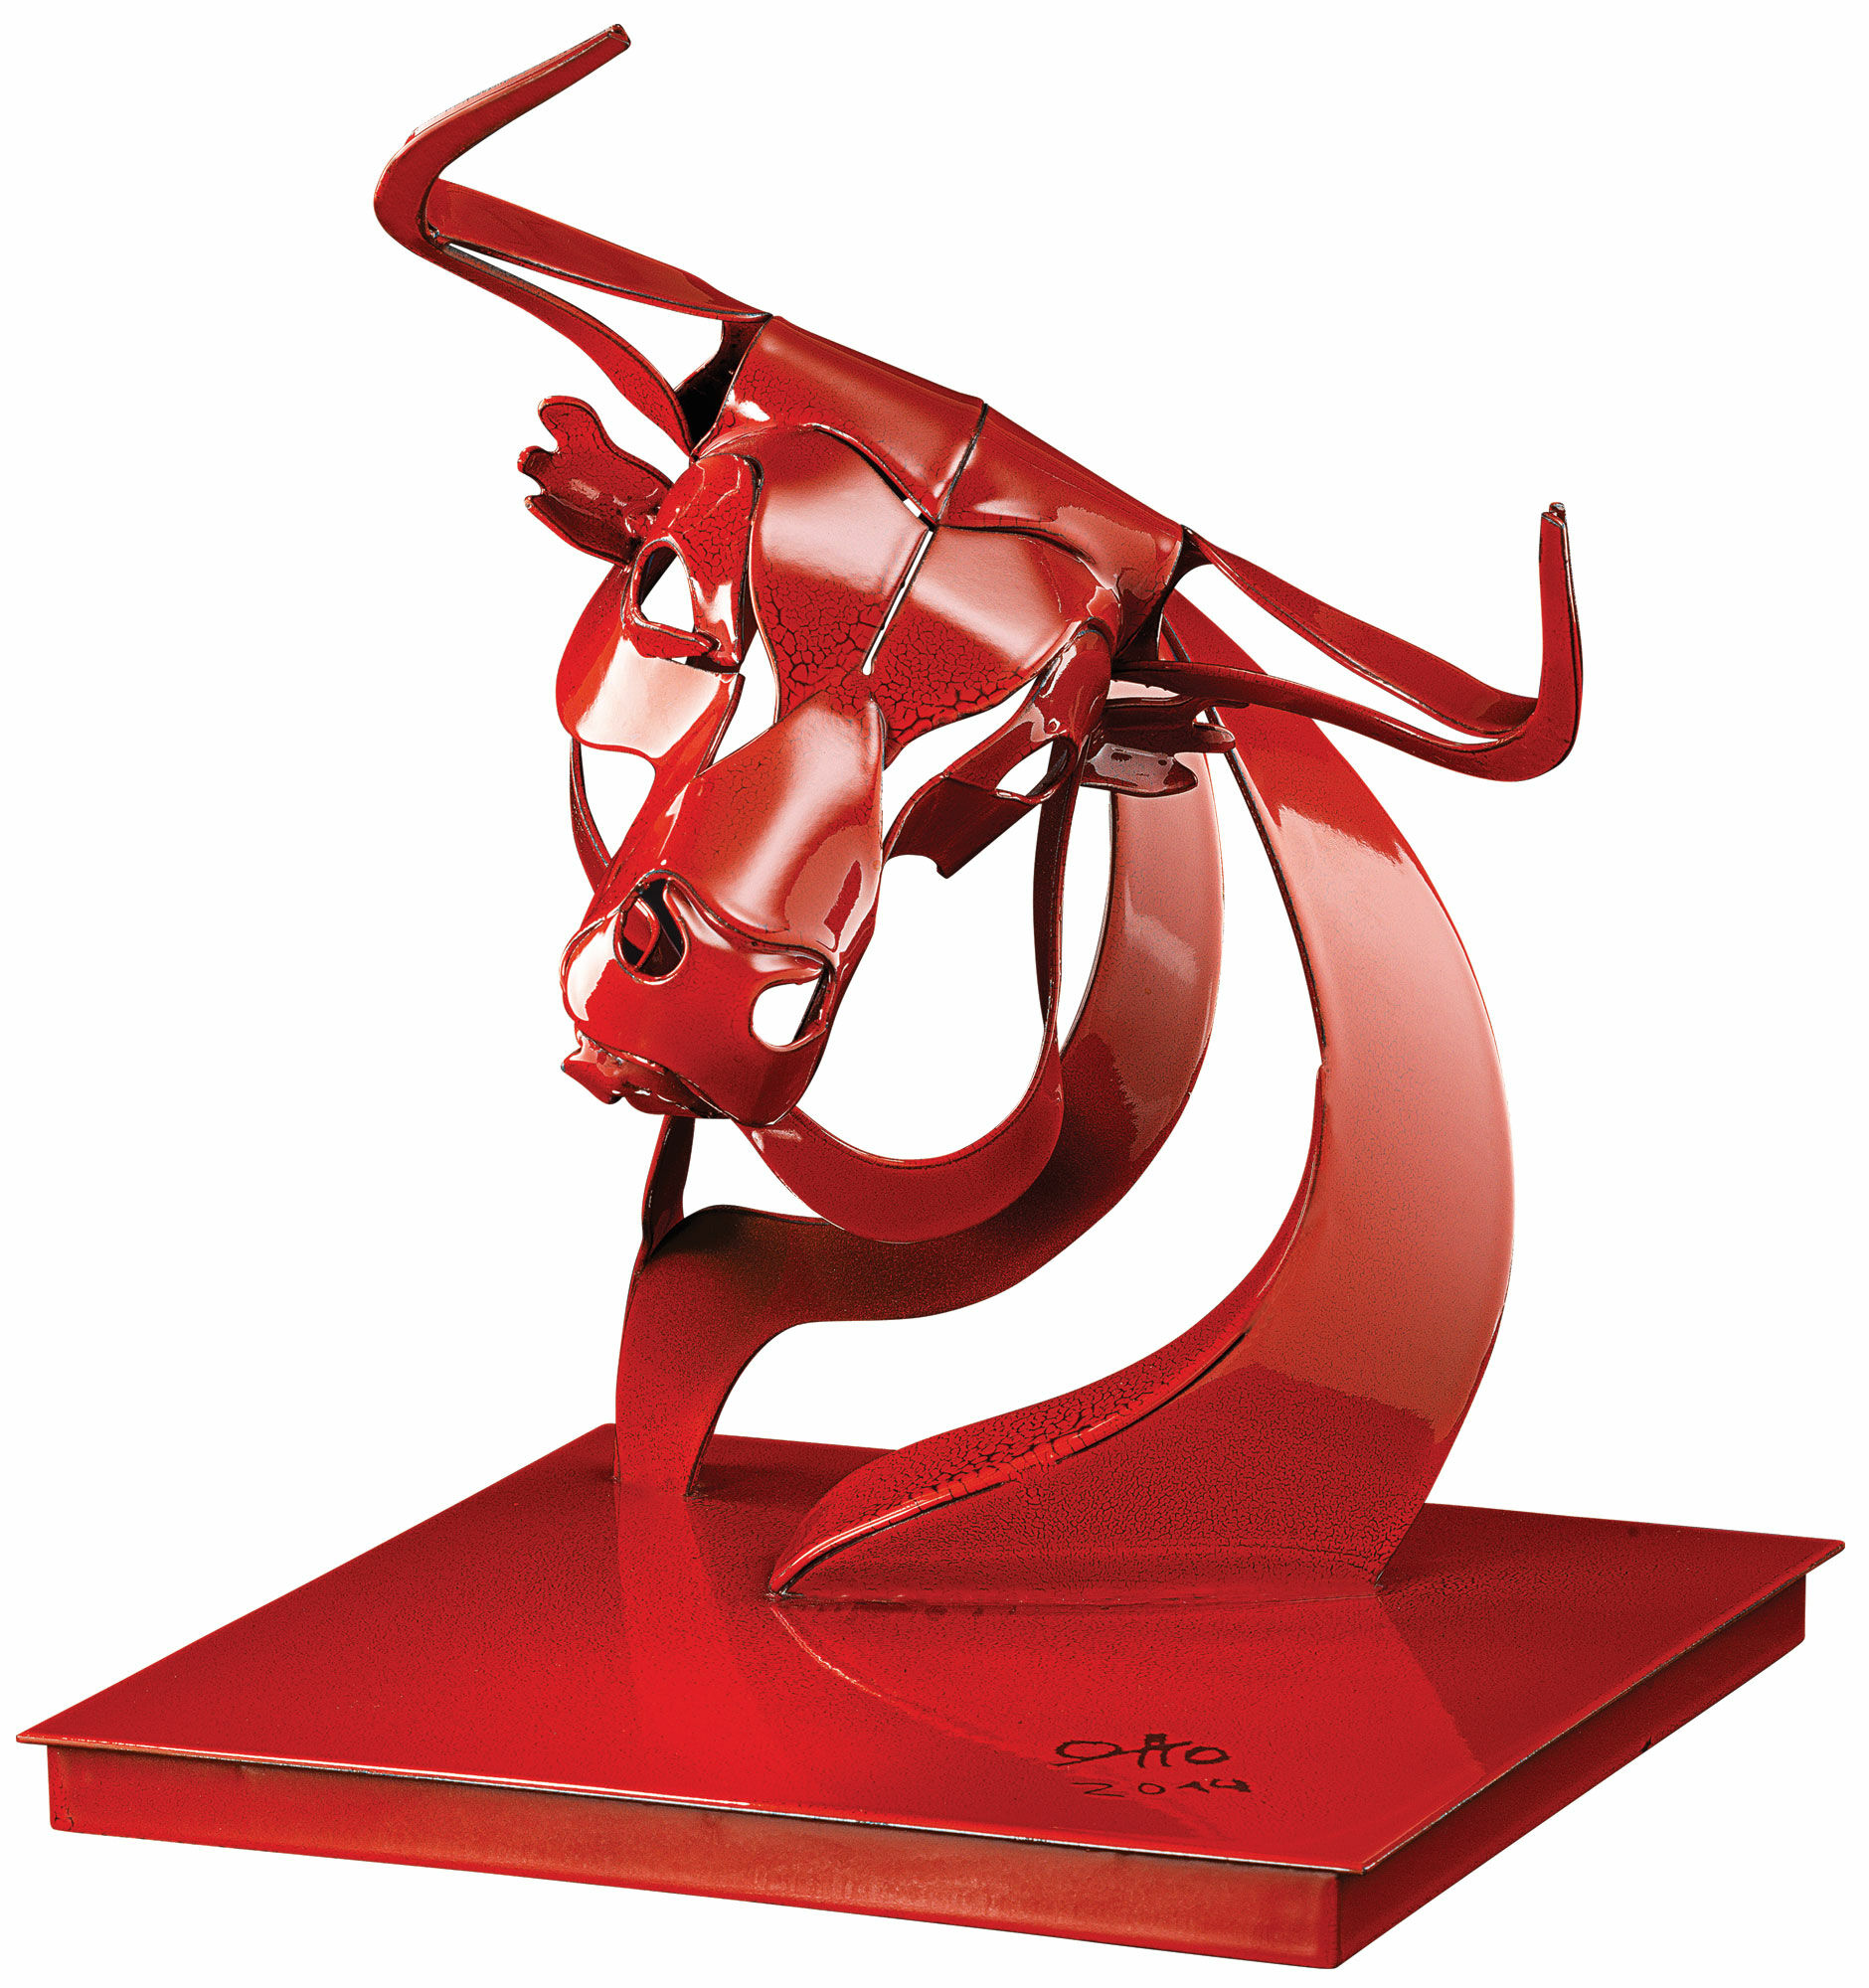 Steel sculpture "Bull de la noche II" (2014), red version by Thomas Otto